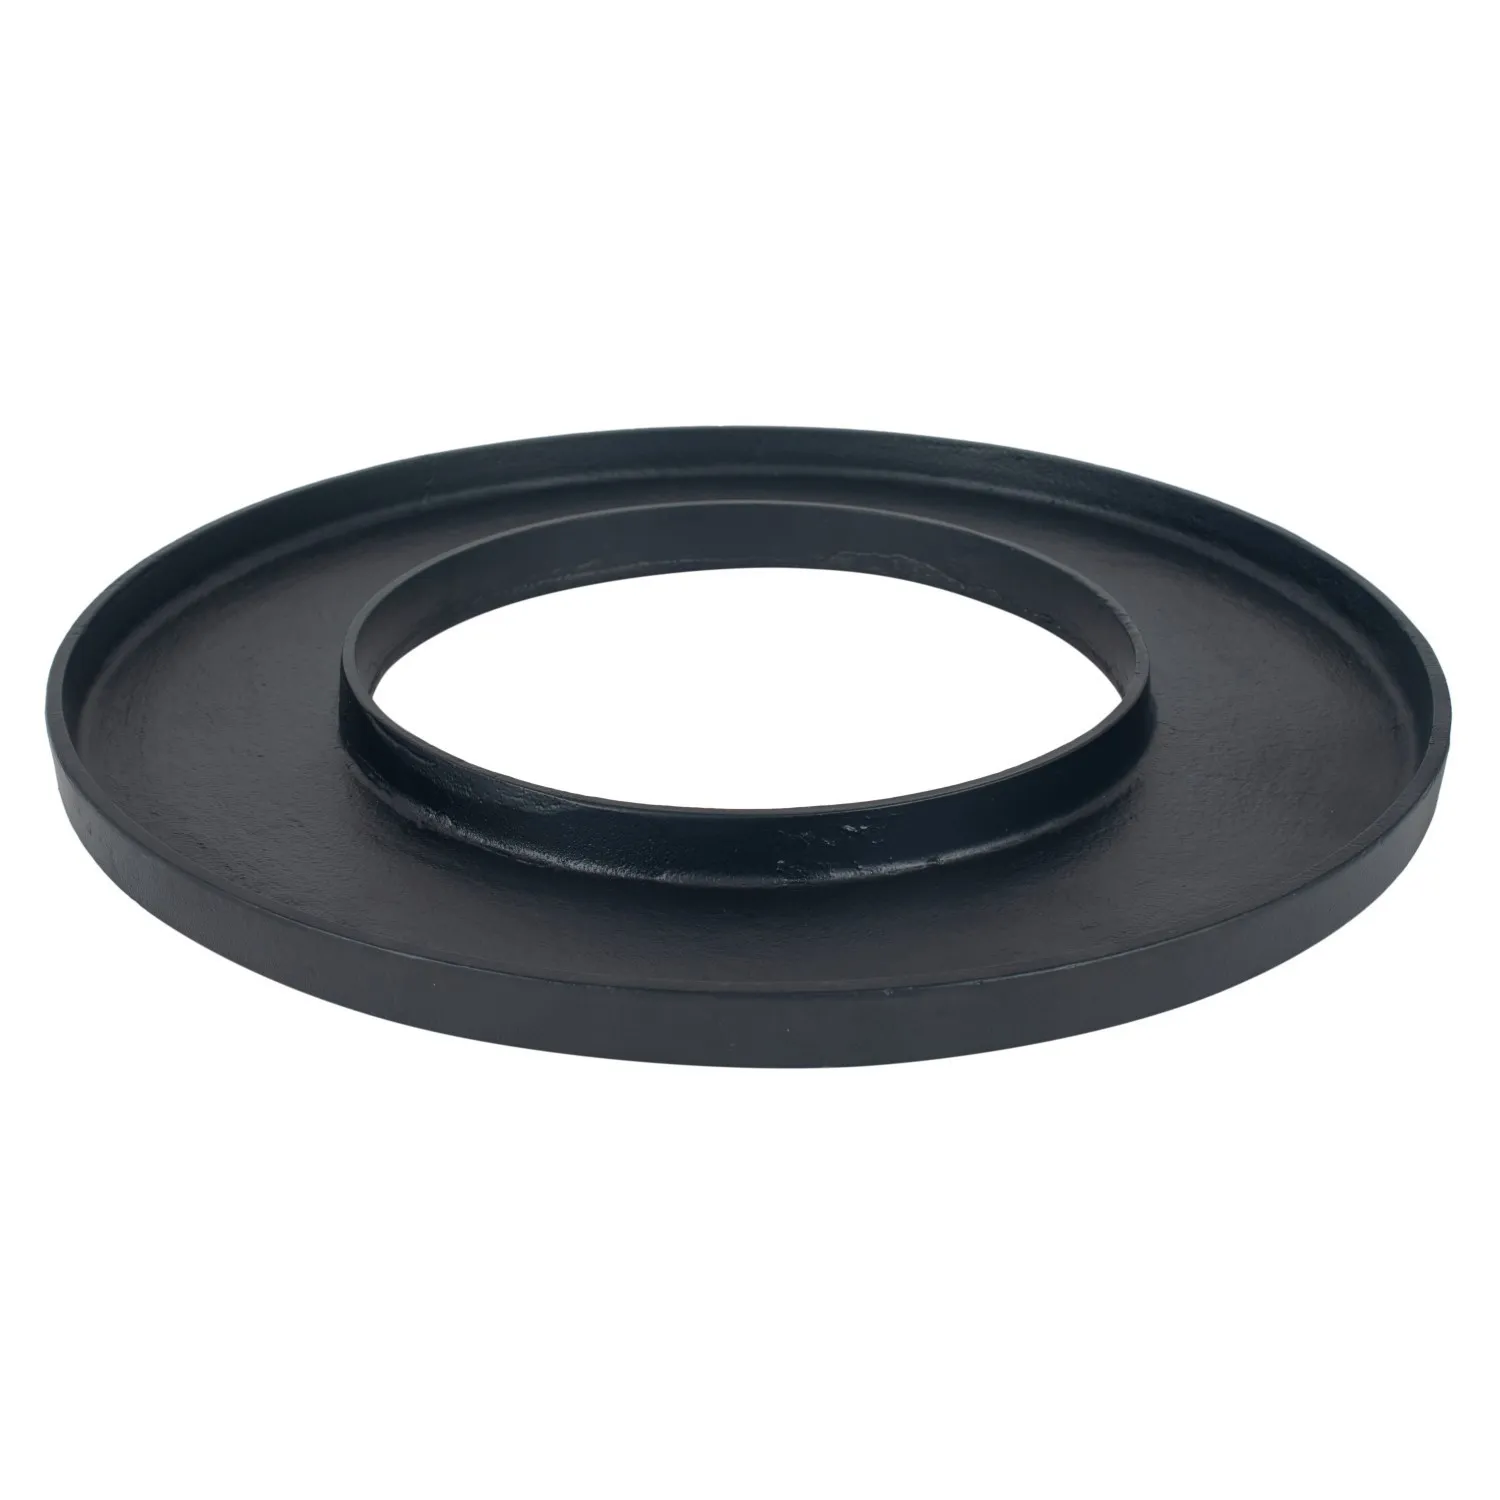 Round Matt Black Metal Ring Display Platter